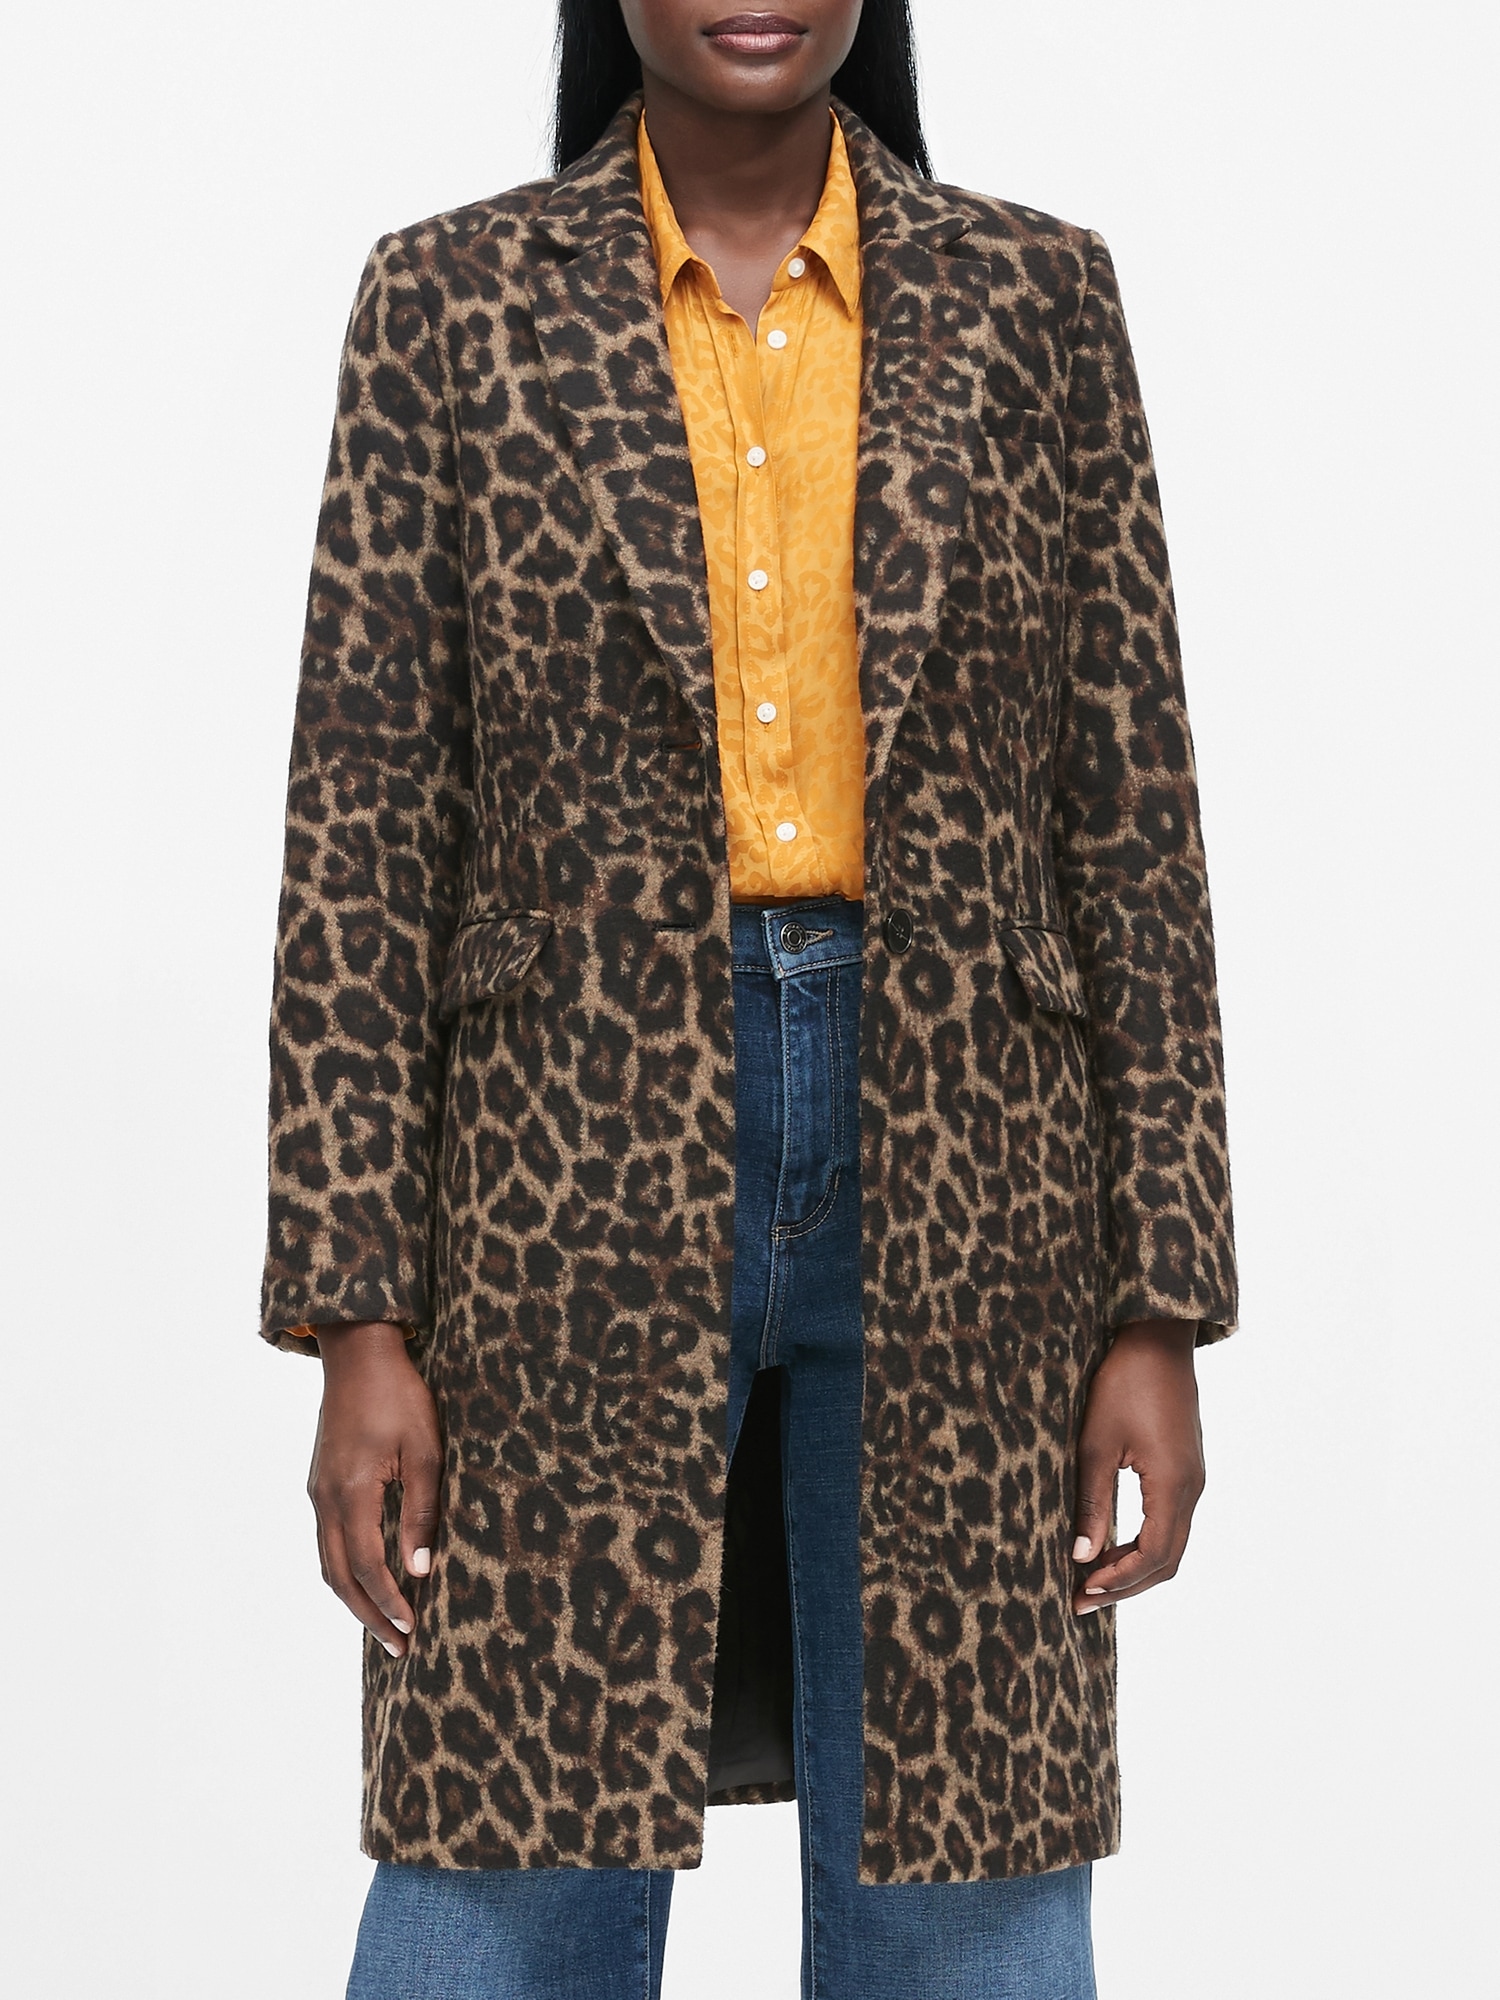 Petite Leopard Print Top Coat